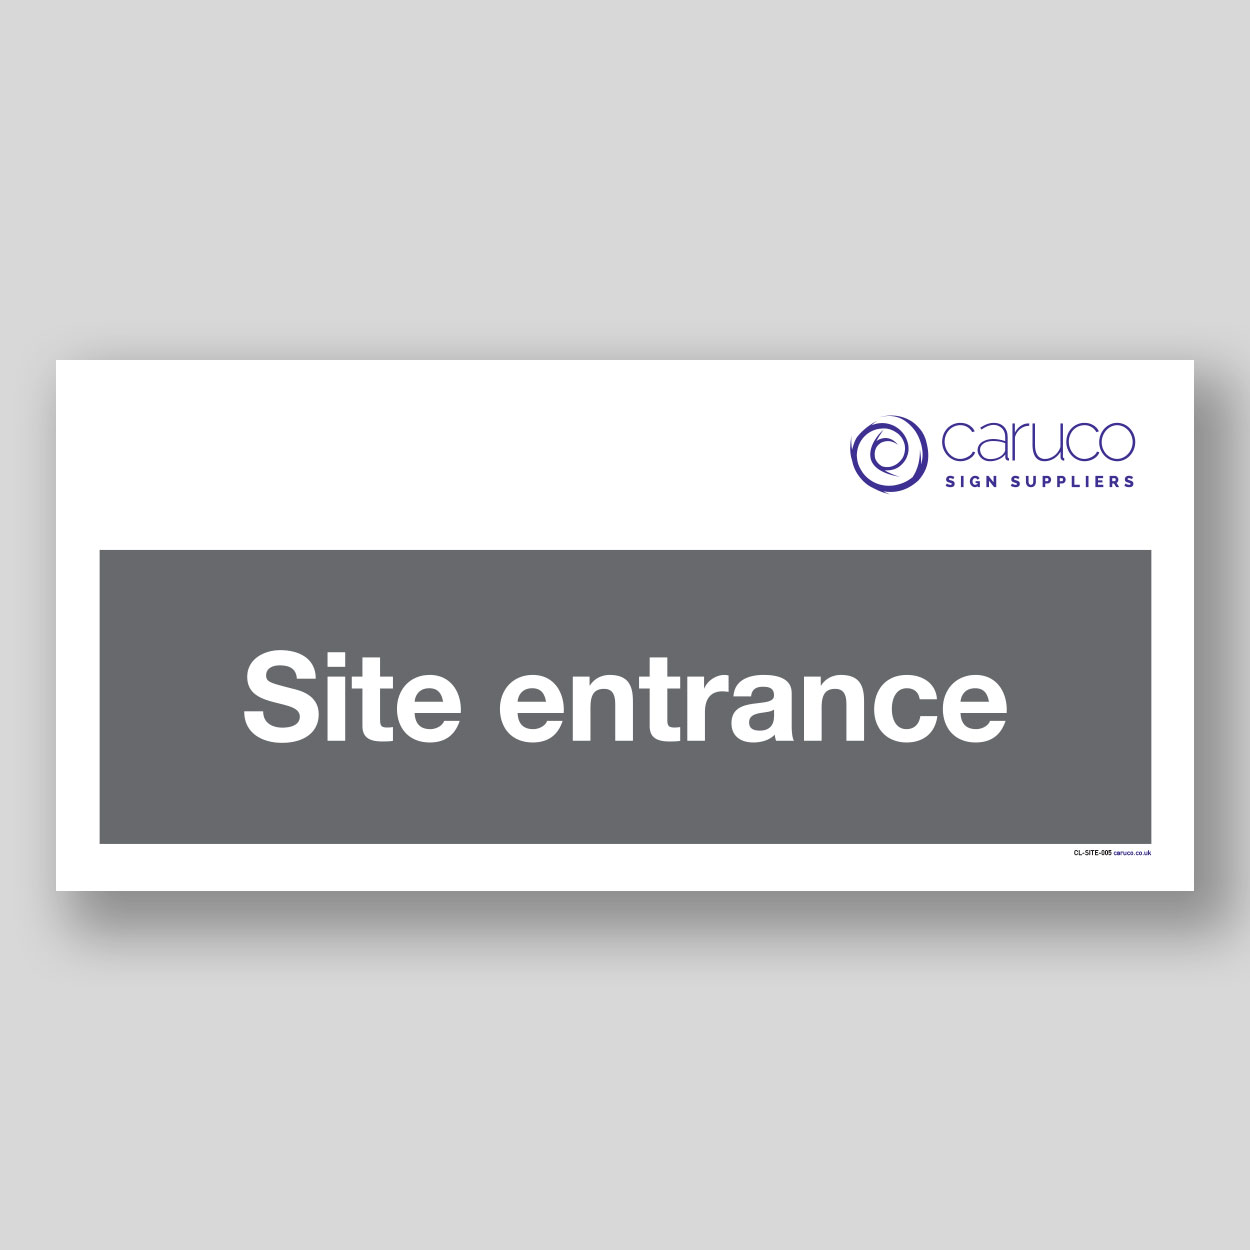 CL-SITE-005 Site entrance